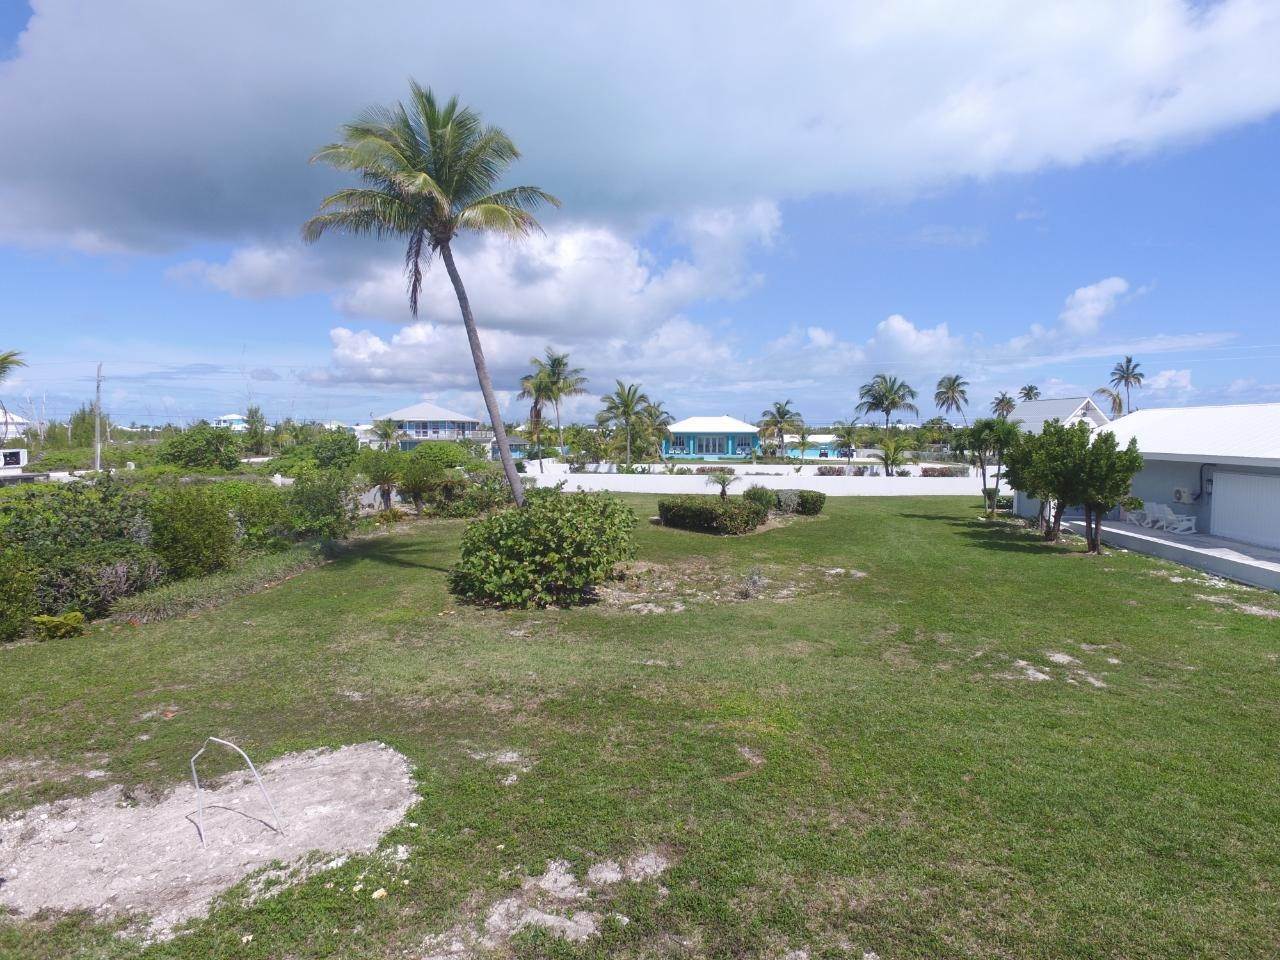 19. Lots / Acreage for Sale at Windward Beach, Treasure Cay, Abaco, Bahamas